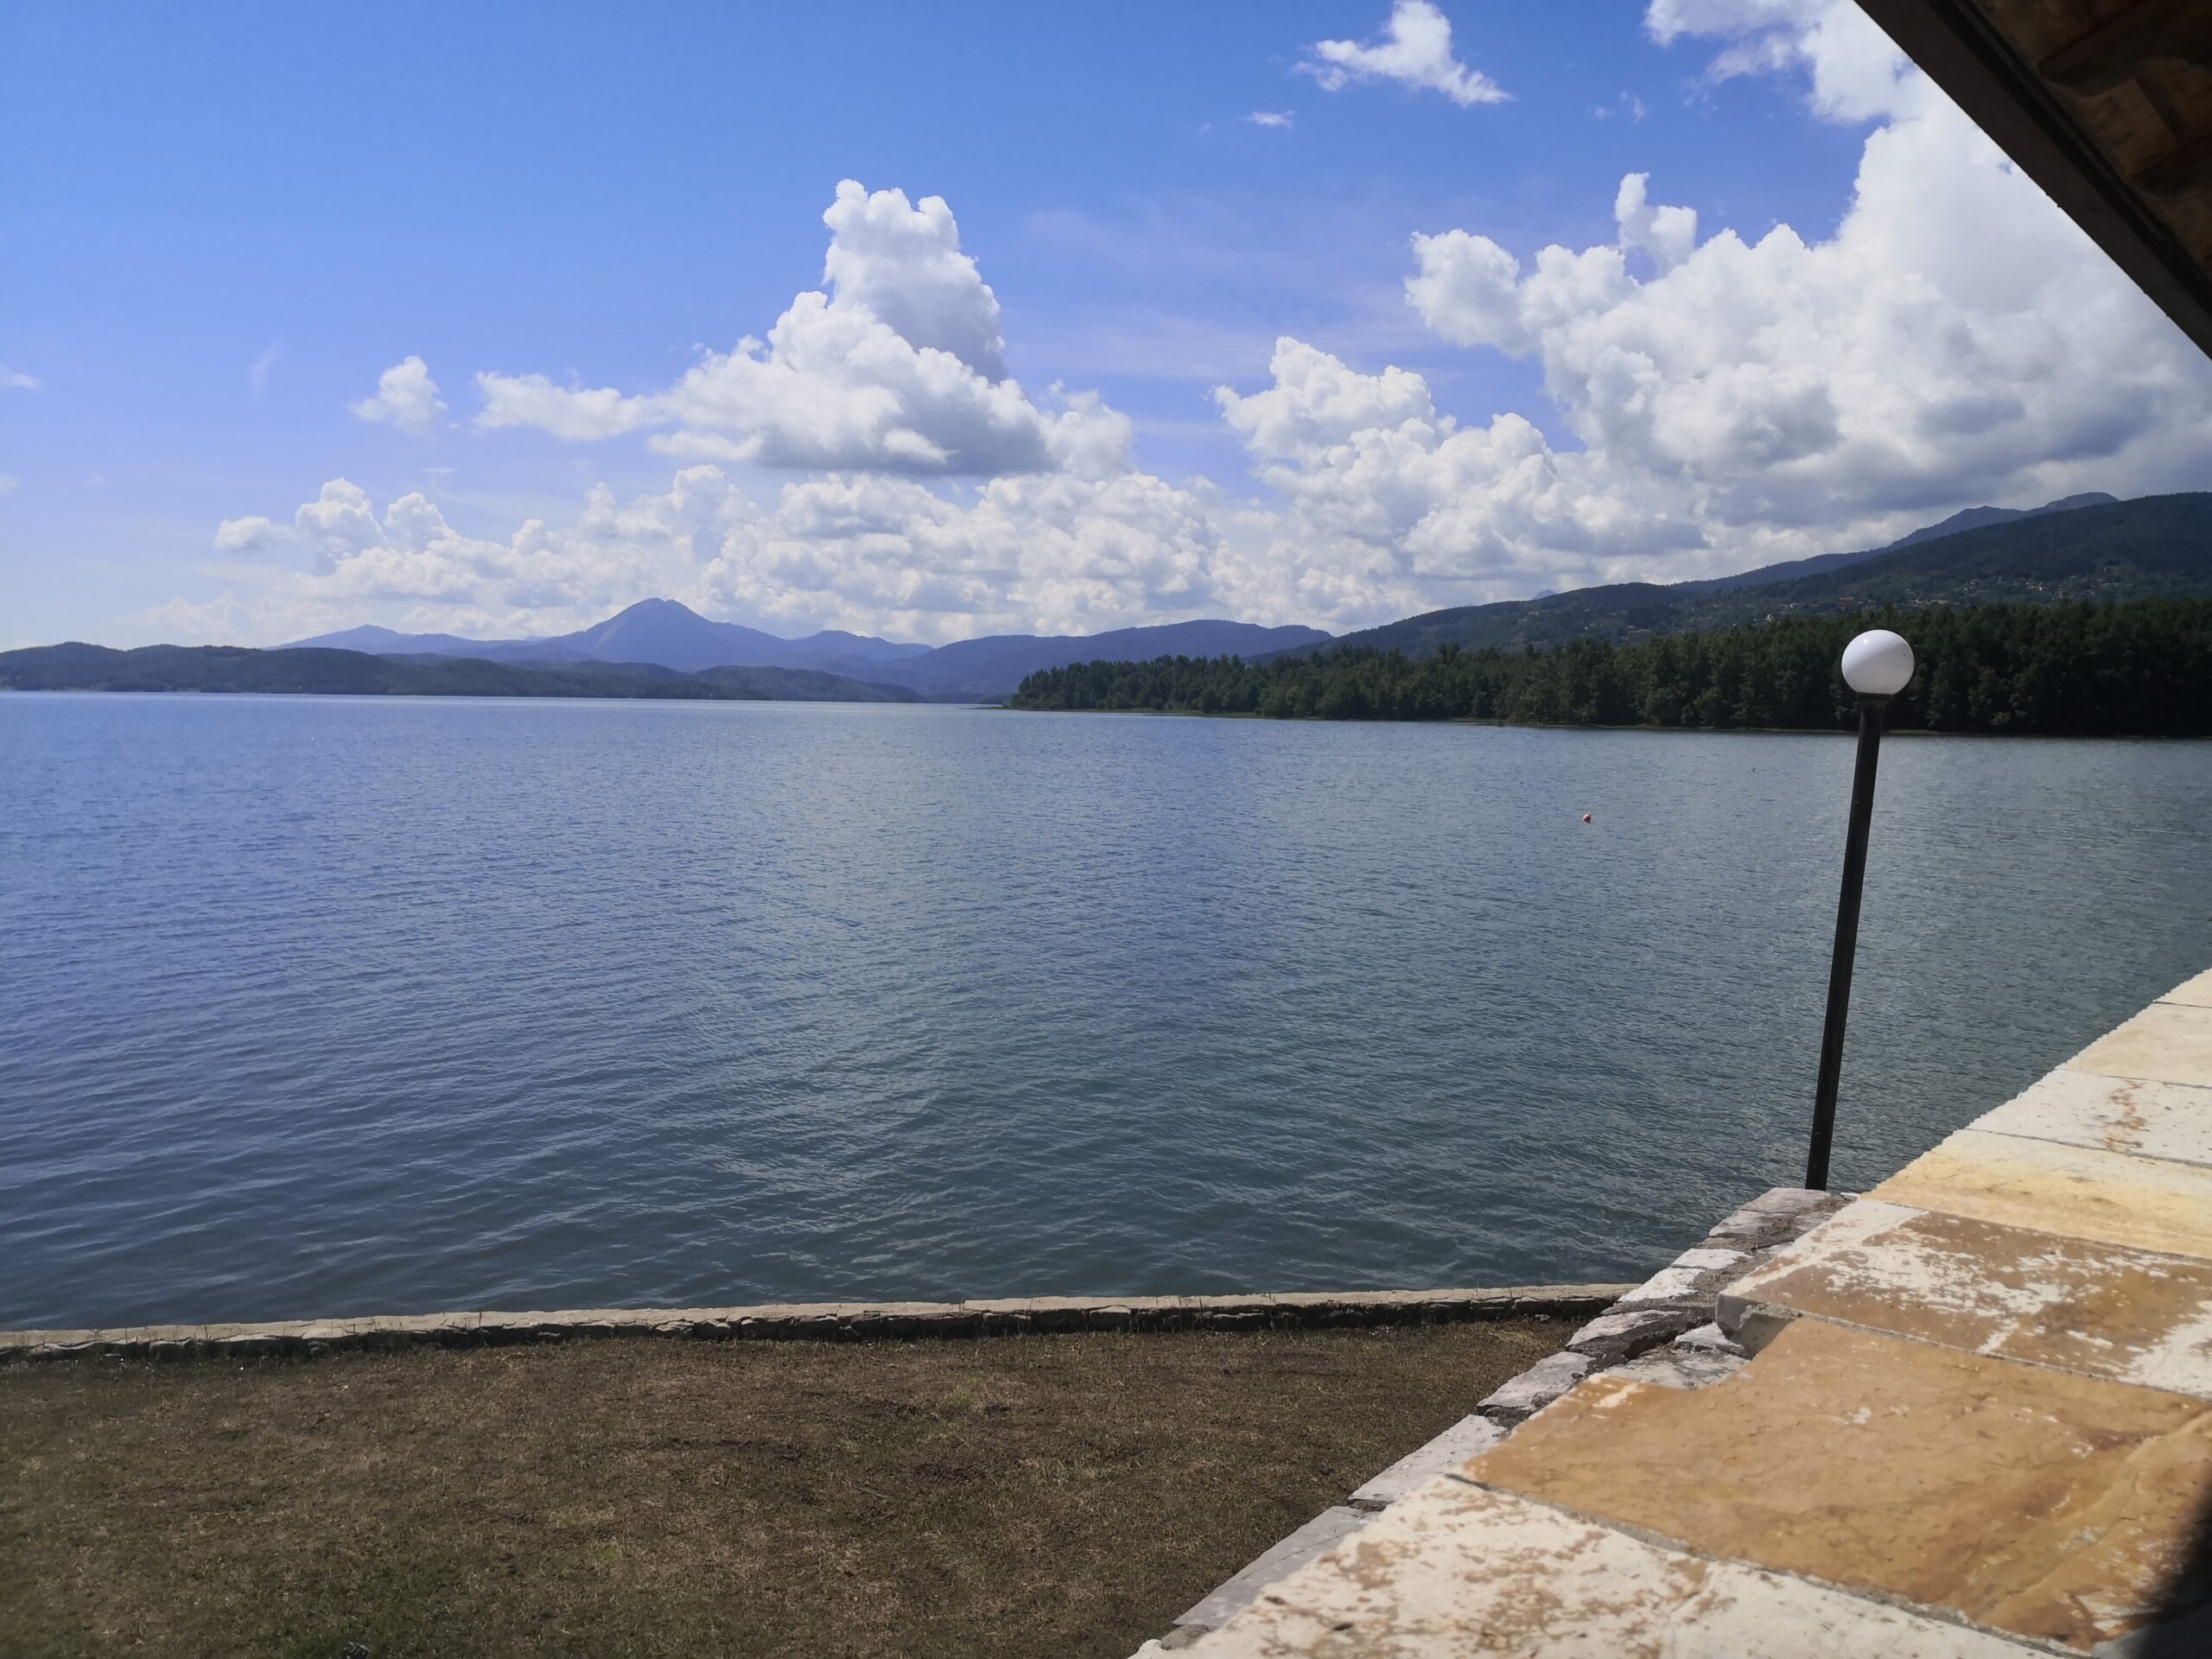 Λίμνη Πλαστήρα: Ιδανικός προορισμός για εναλλακτικές διακοπές και για το Πάσχα